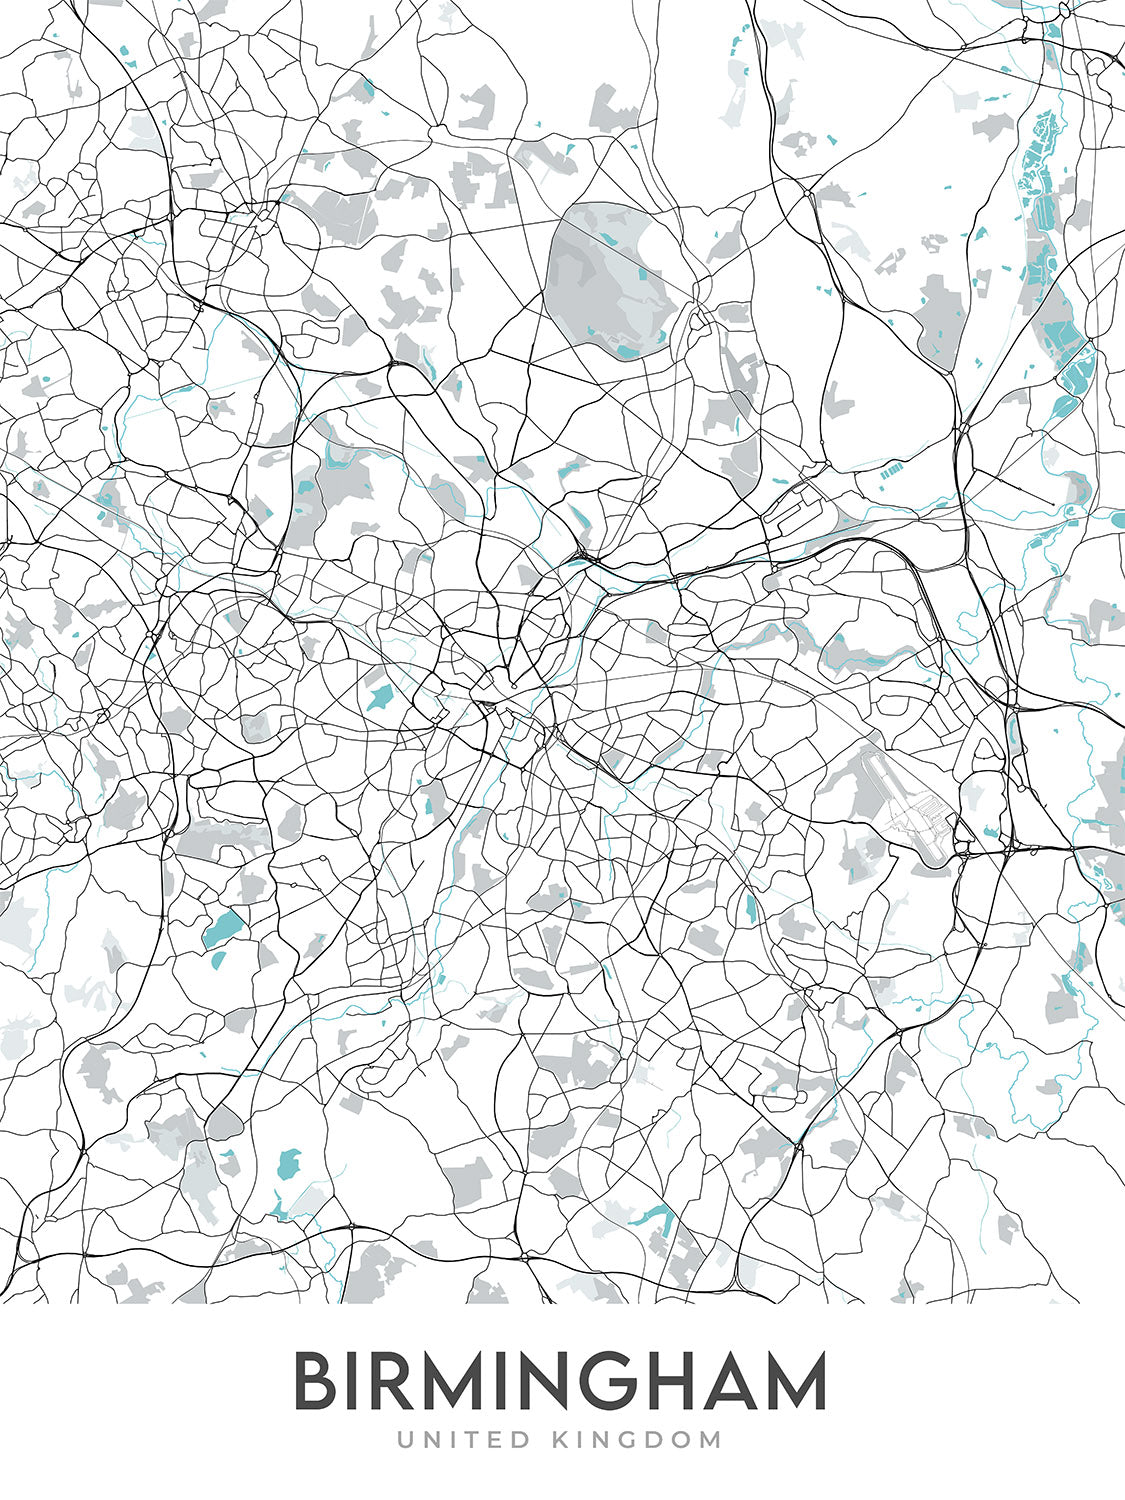 Mapa moderno de la ciudad de Birmingham, Reino Unido: Bournville, Moseley, Harborne, Catedral de Birmingham, Biblioteca de Birmingham